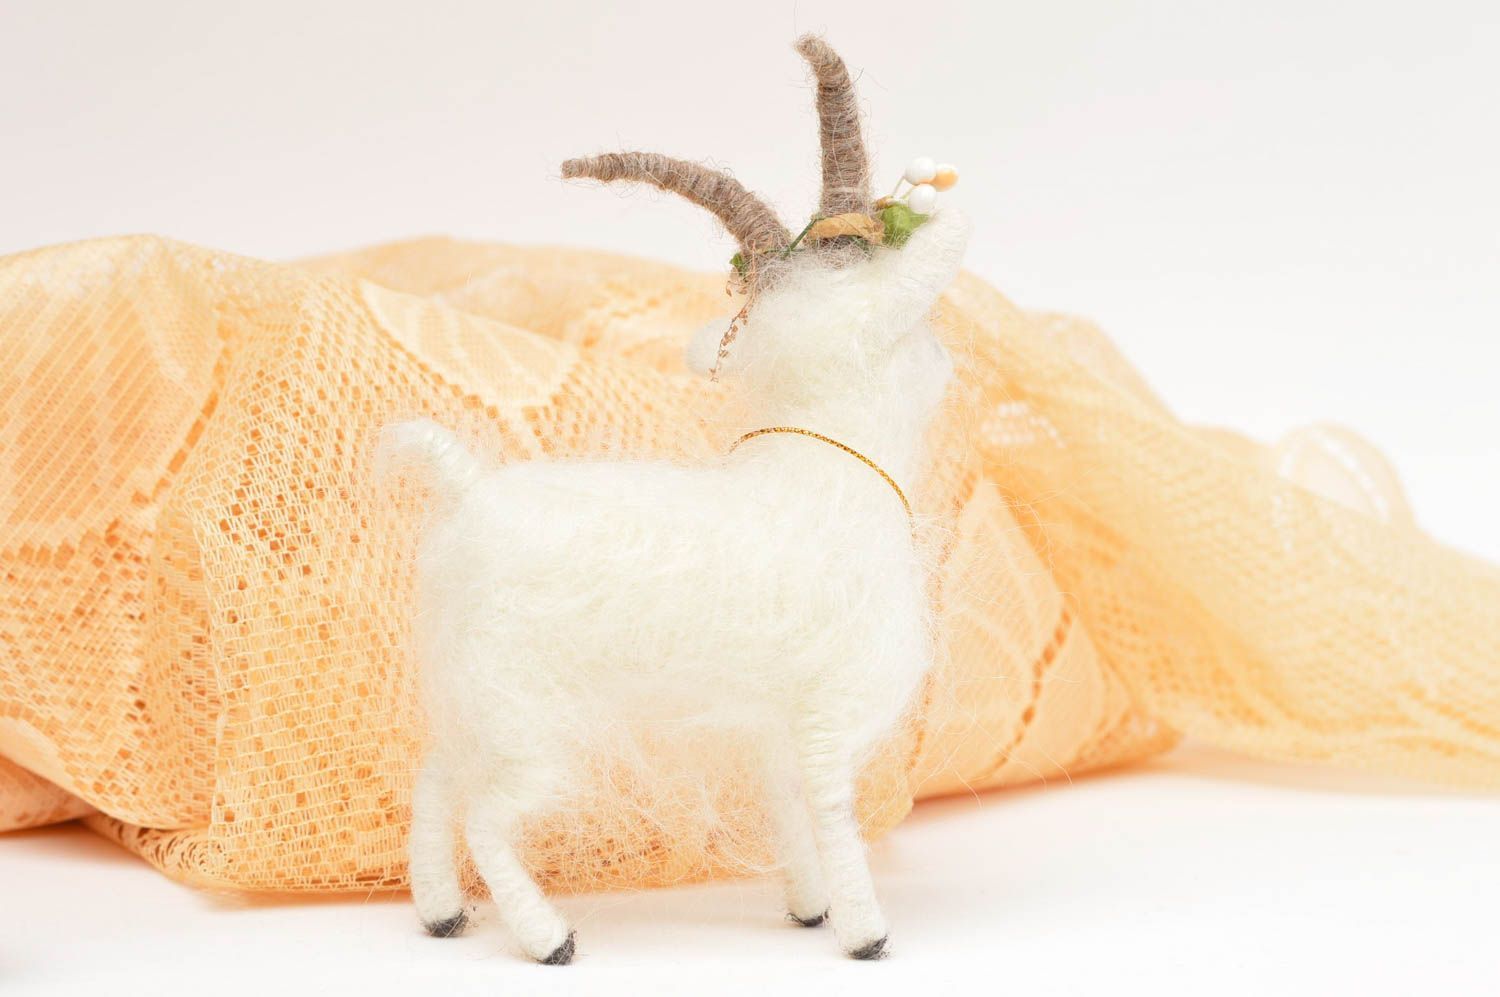 Игрушка интерьерная коза игрушка ручной работы мягкая игрушка симпатичная фото 6